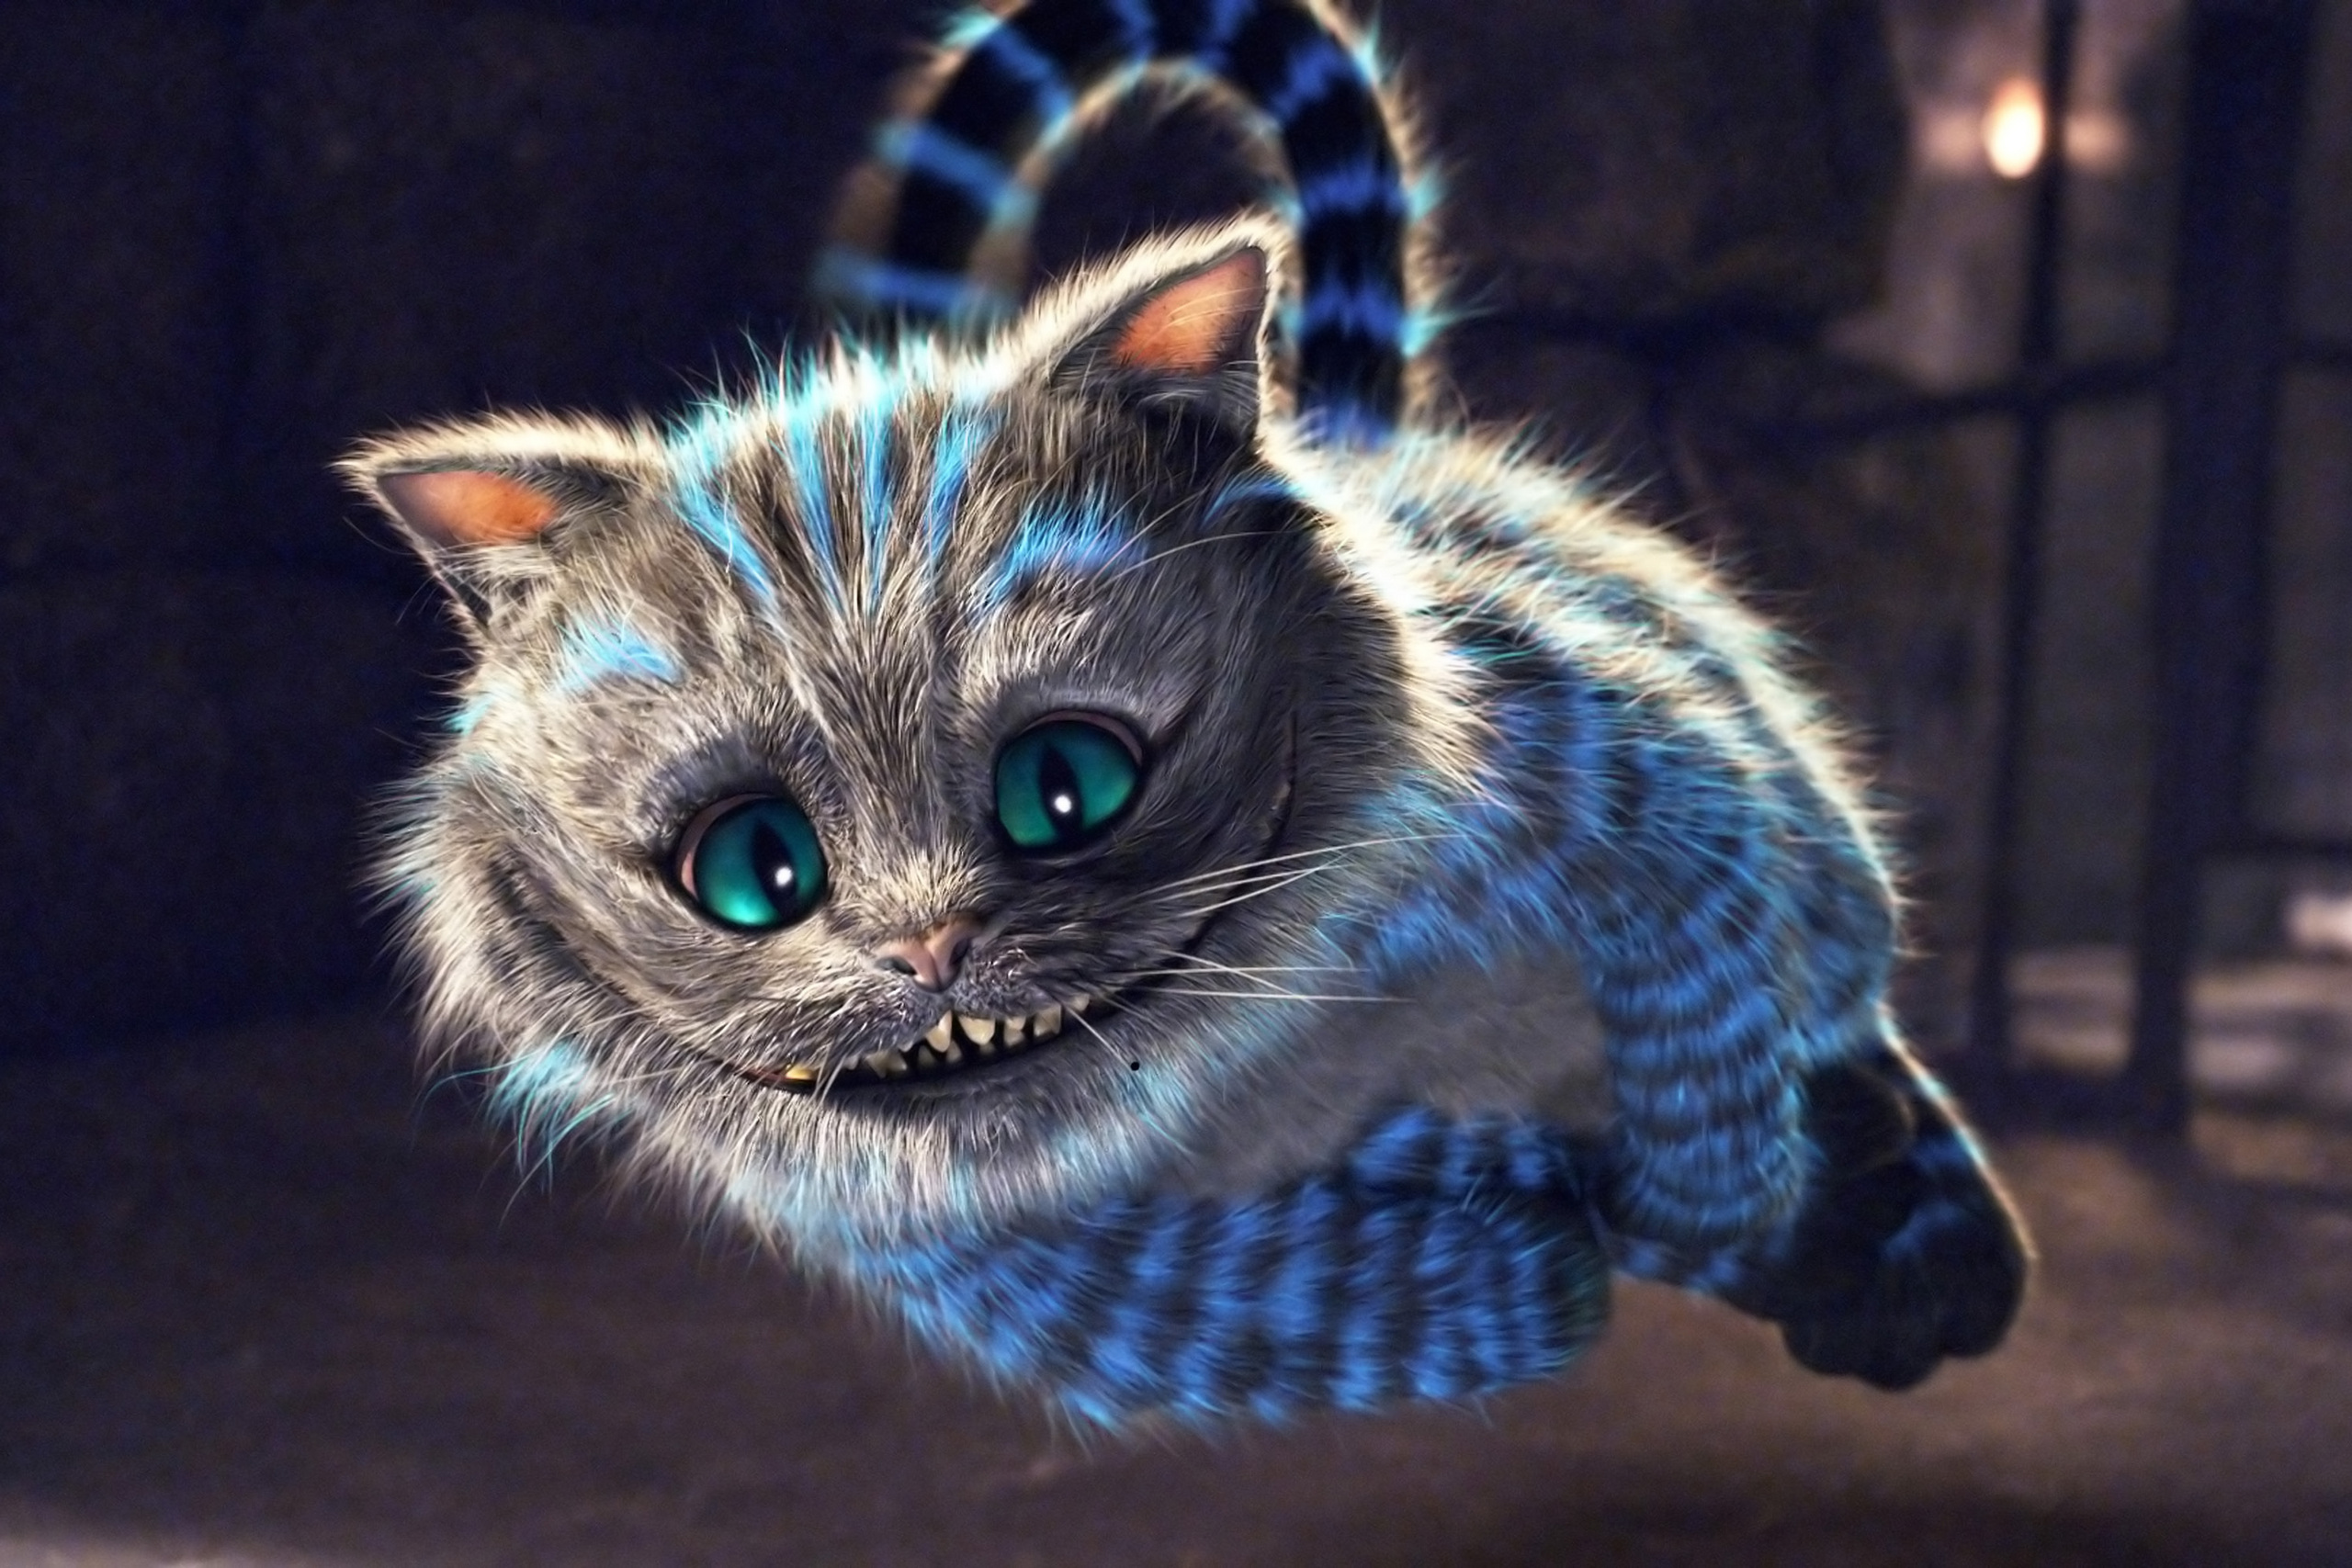 The Cheshire Cat - The Cheshire Cat Photo (11650686) - Fanpop